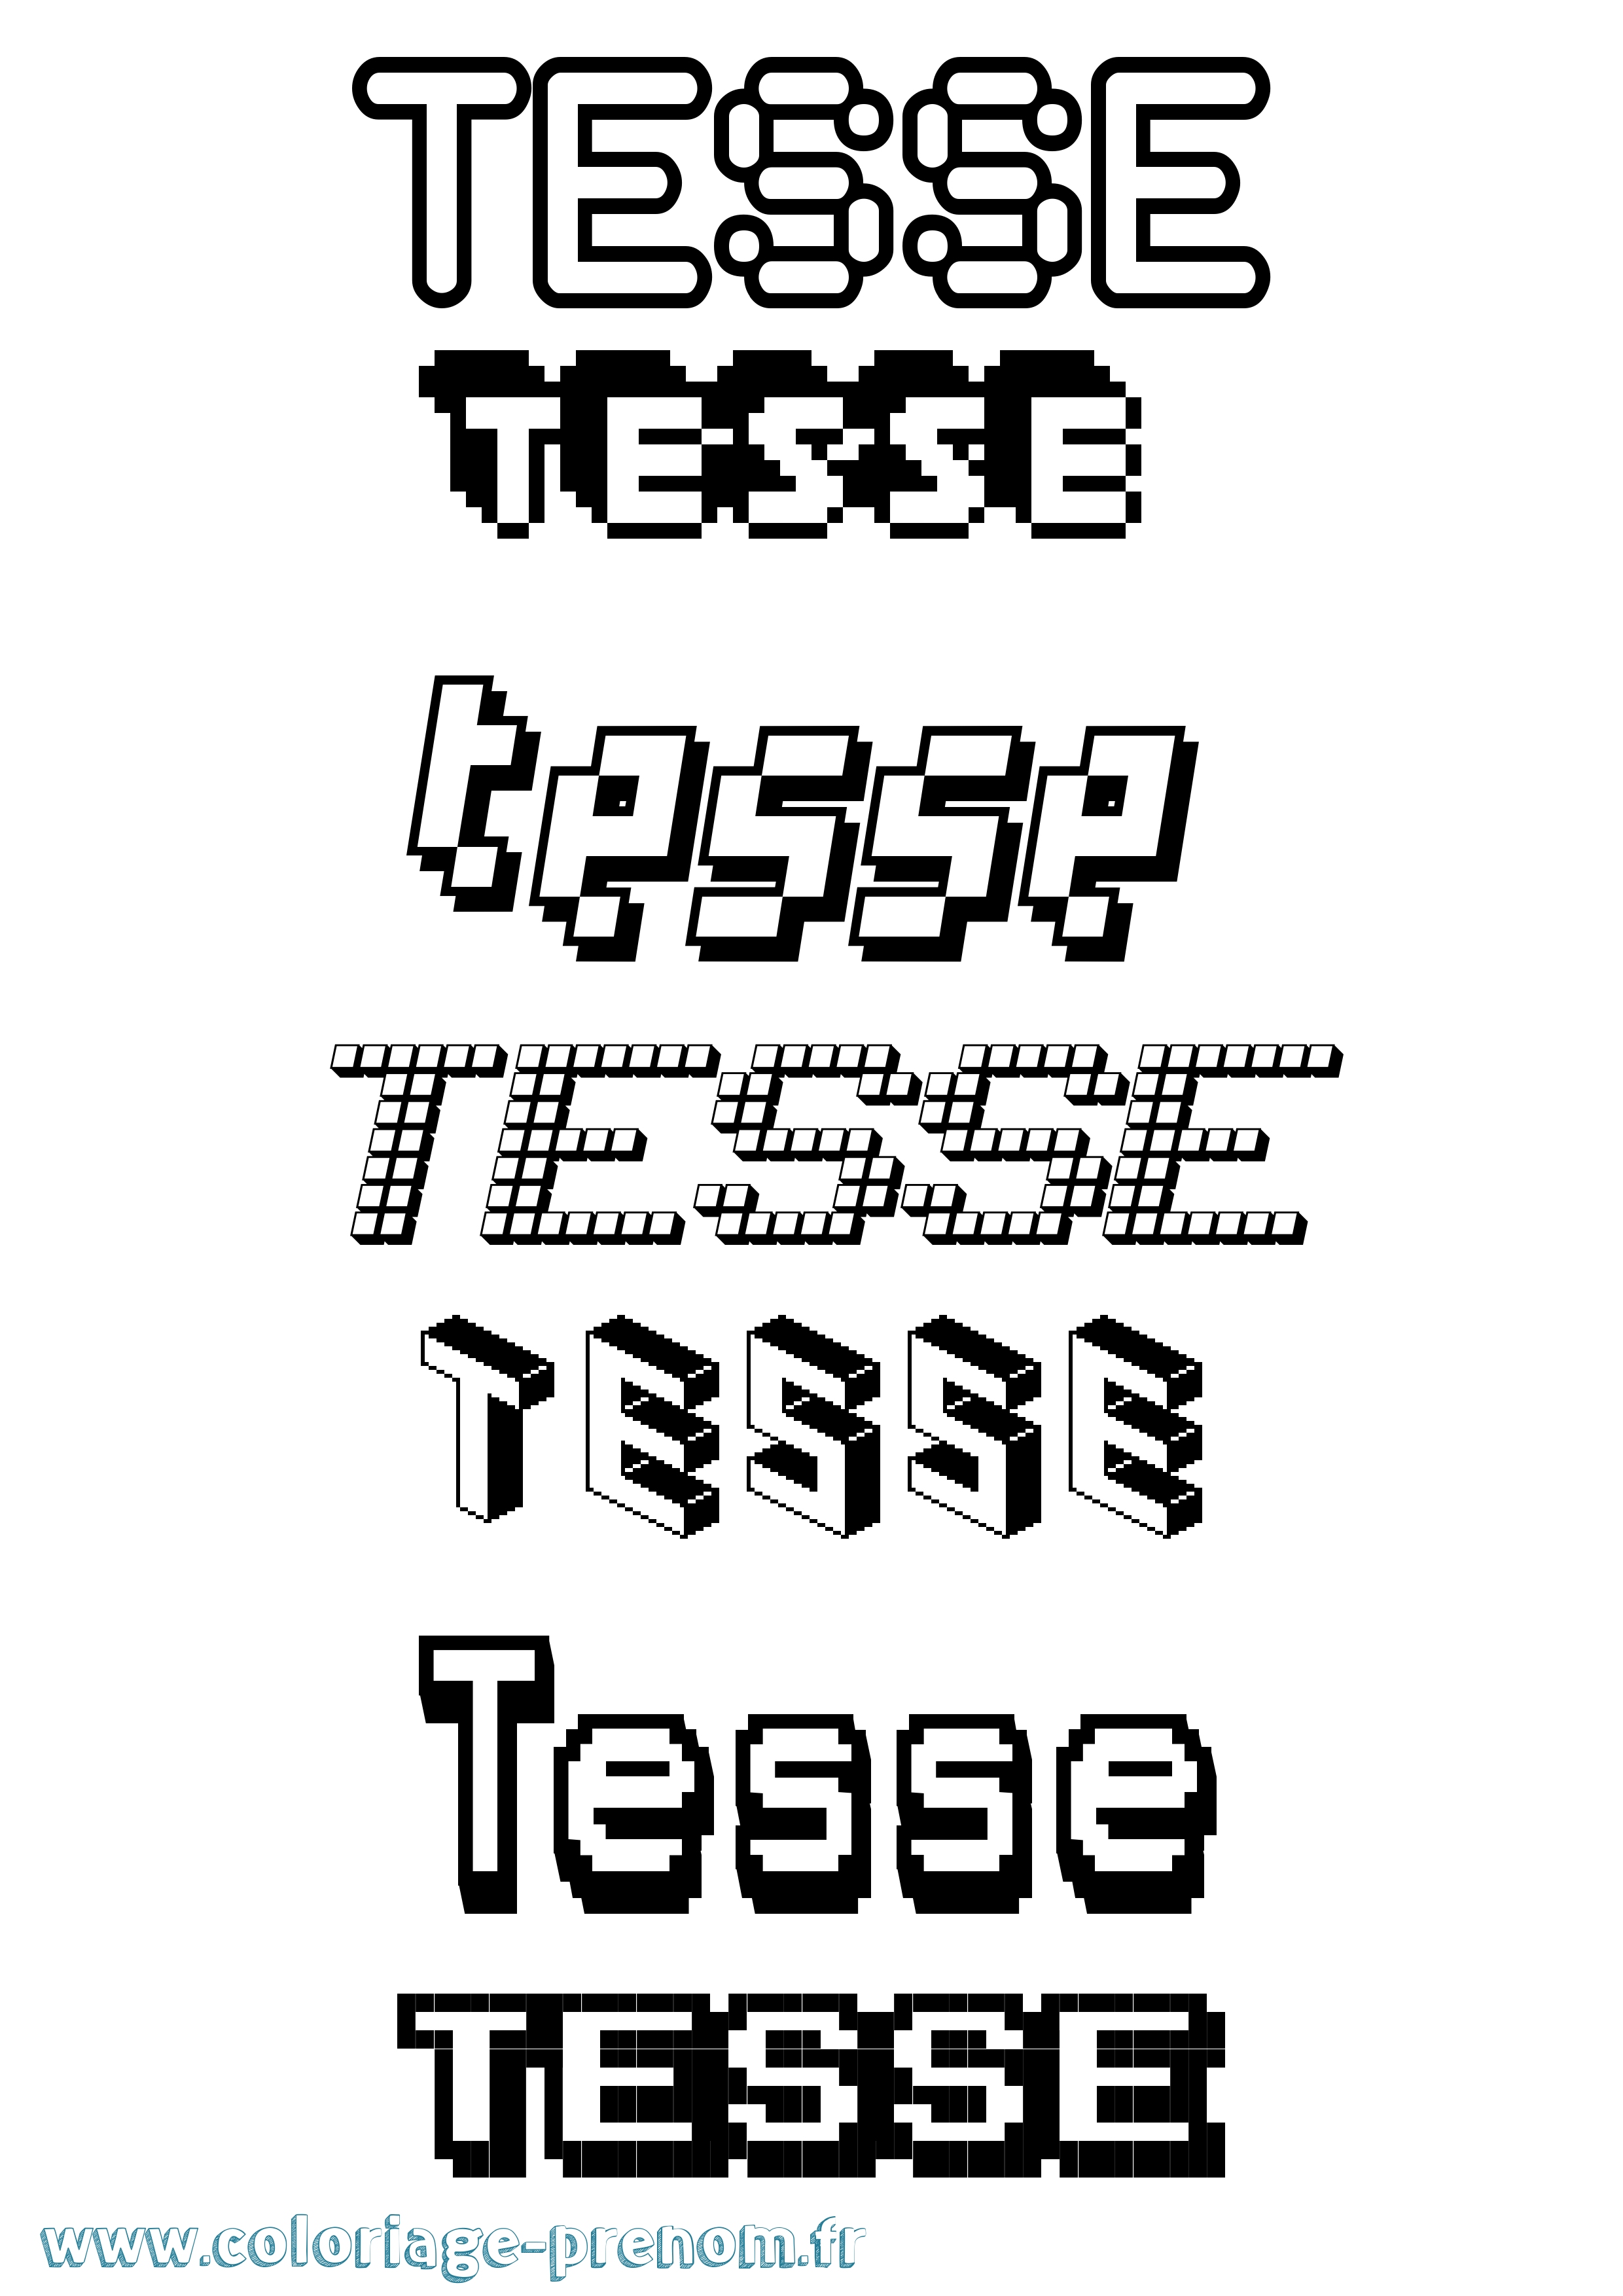 Coloriage prénom Tesse Pixel